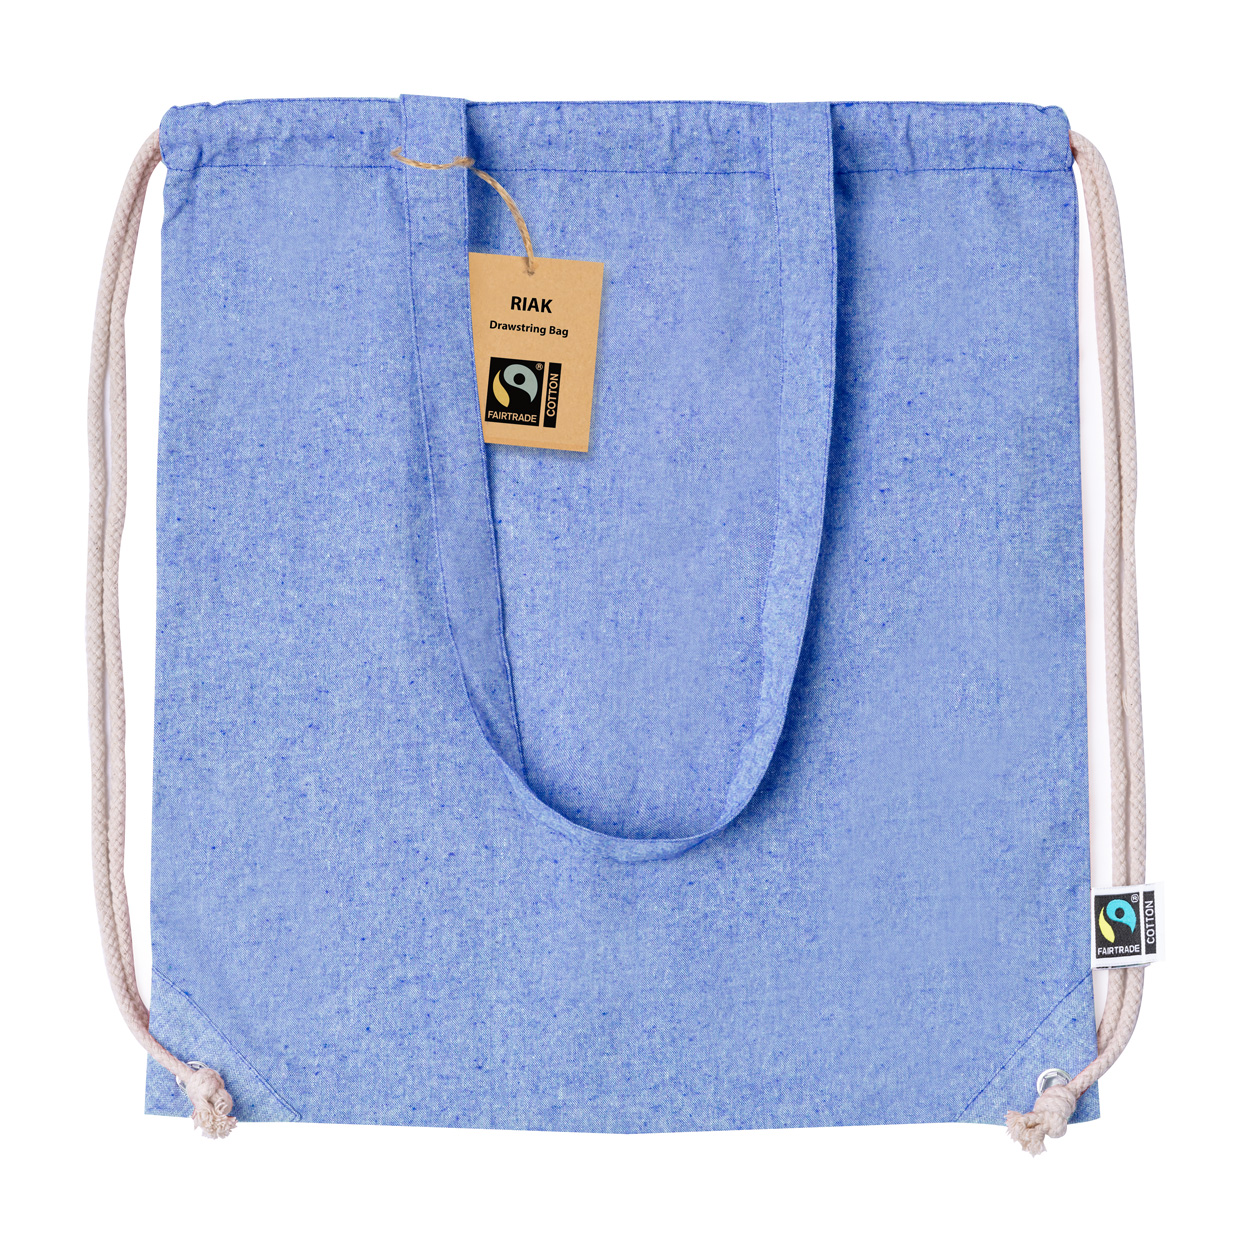 Riak fairtrade downloadable bag - blue